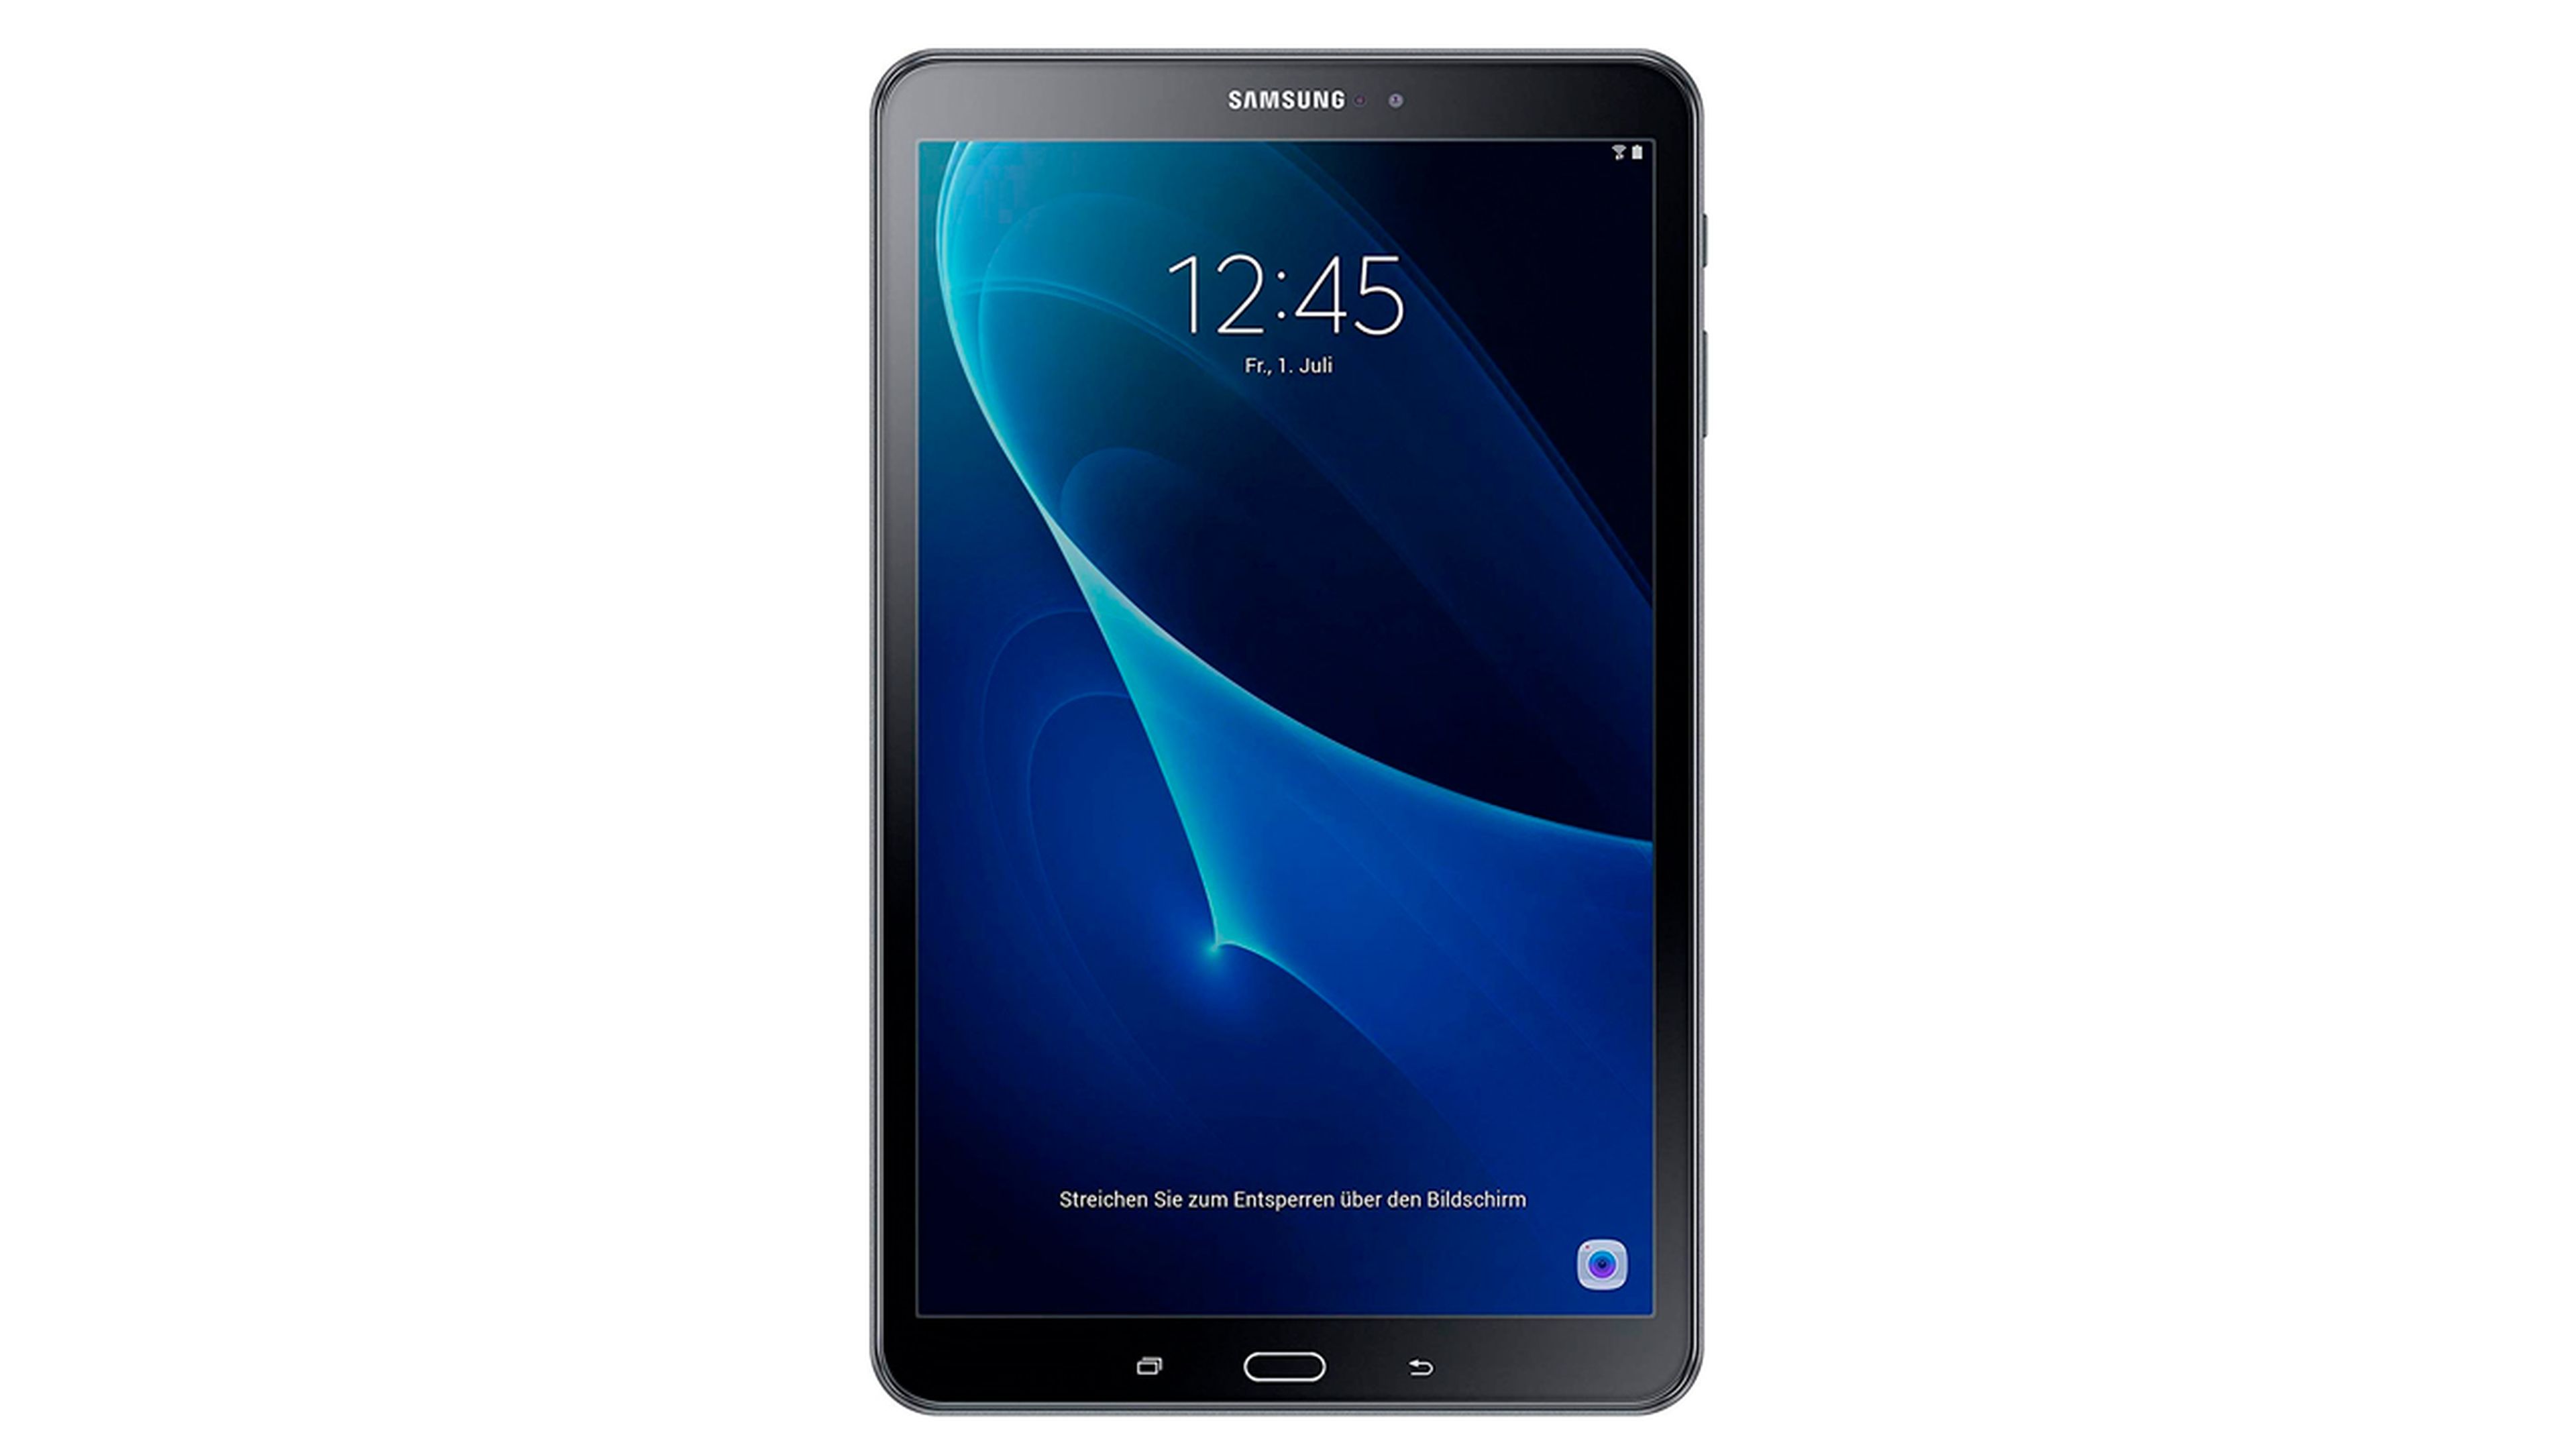 Lo más vendido en Amazon, tablet Samsung Galaxy Tab A por 129 euros